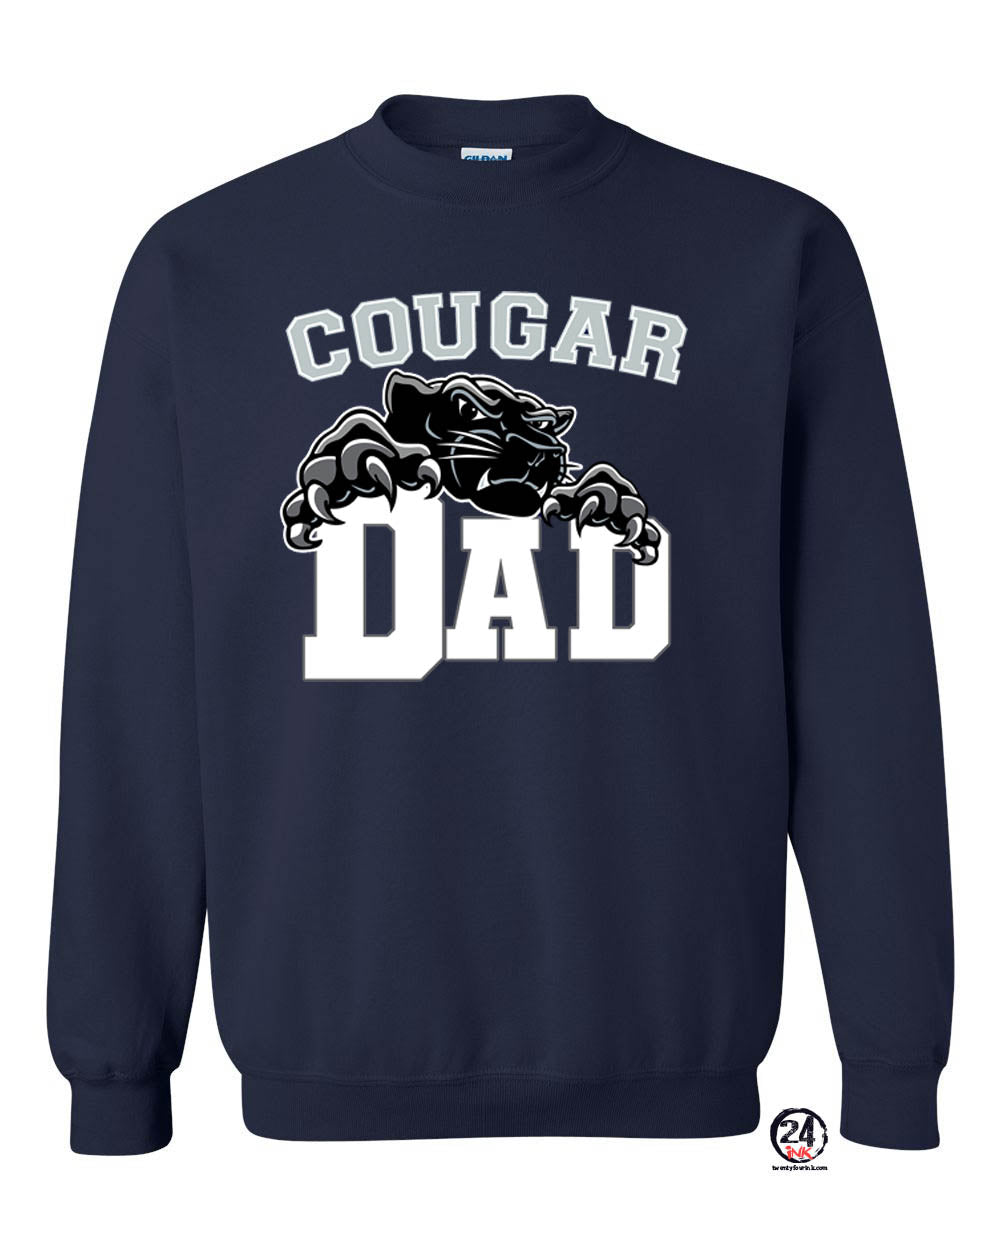 Cougar Dad non hooded sweatshirt